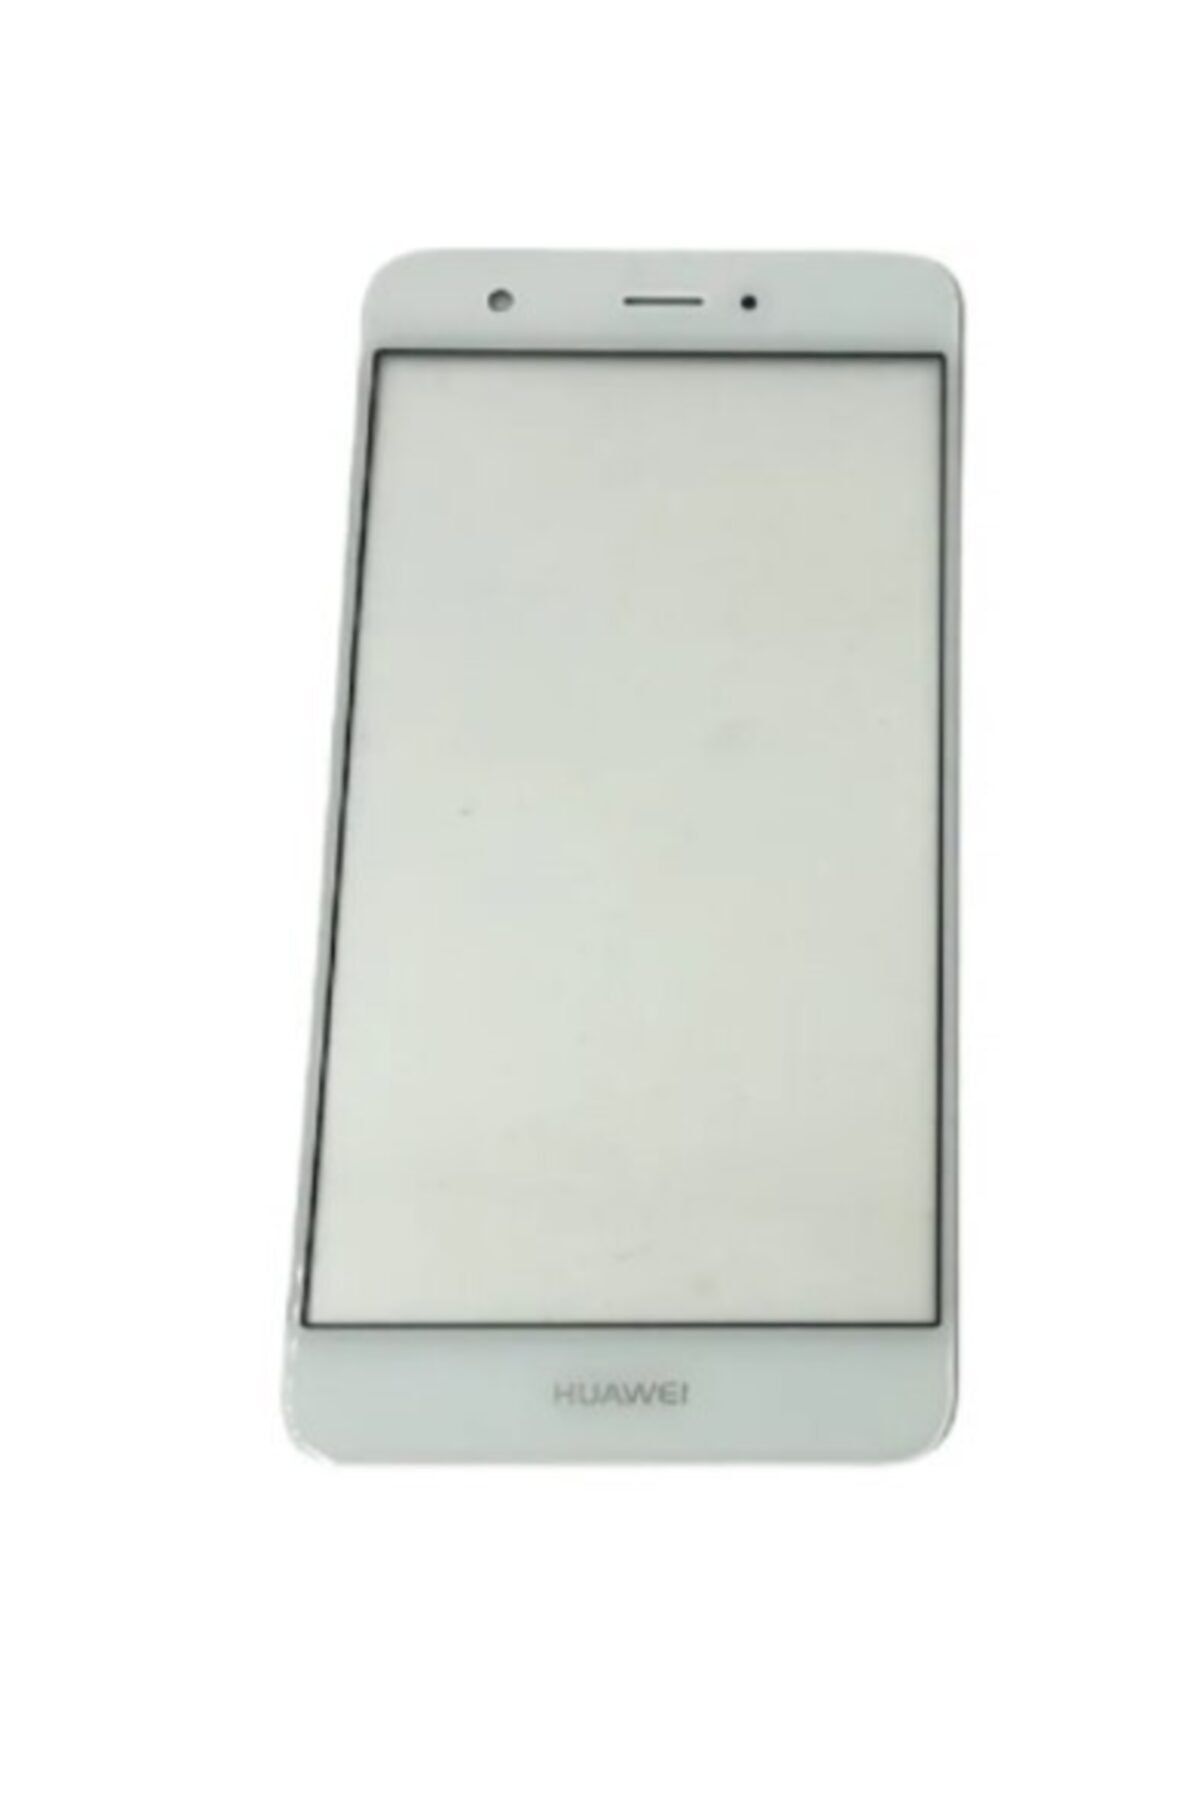 Boyra Teknoloji Huawei Uyumlu Nova Okalı Dokunmatik Ön Cam Lens Can-l01 Beyaz